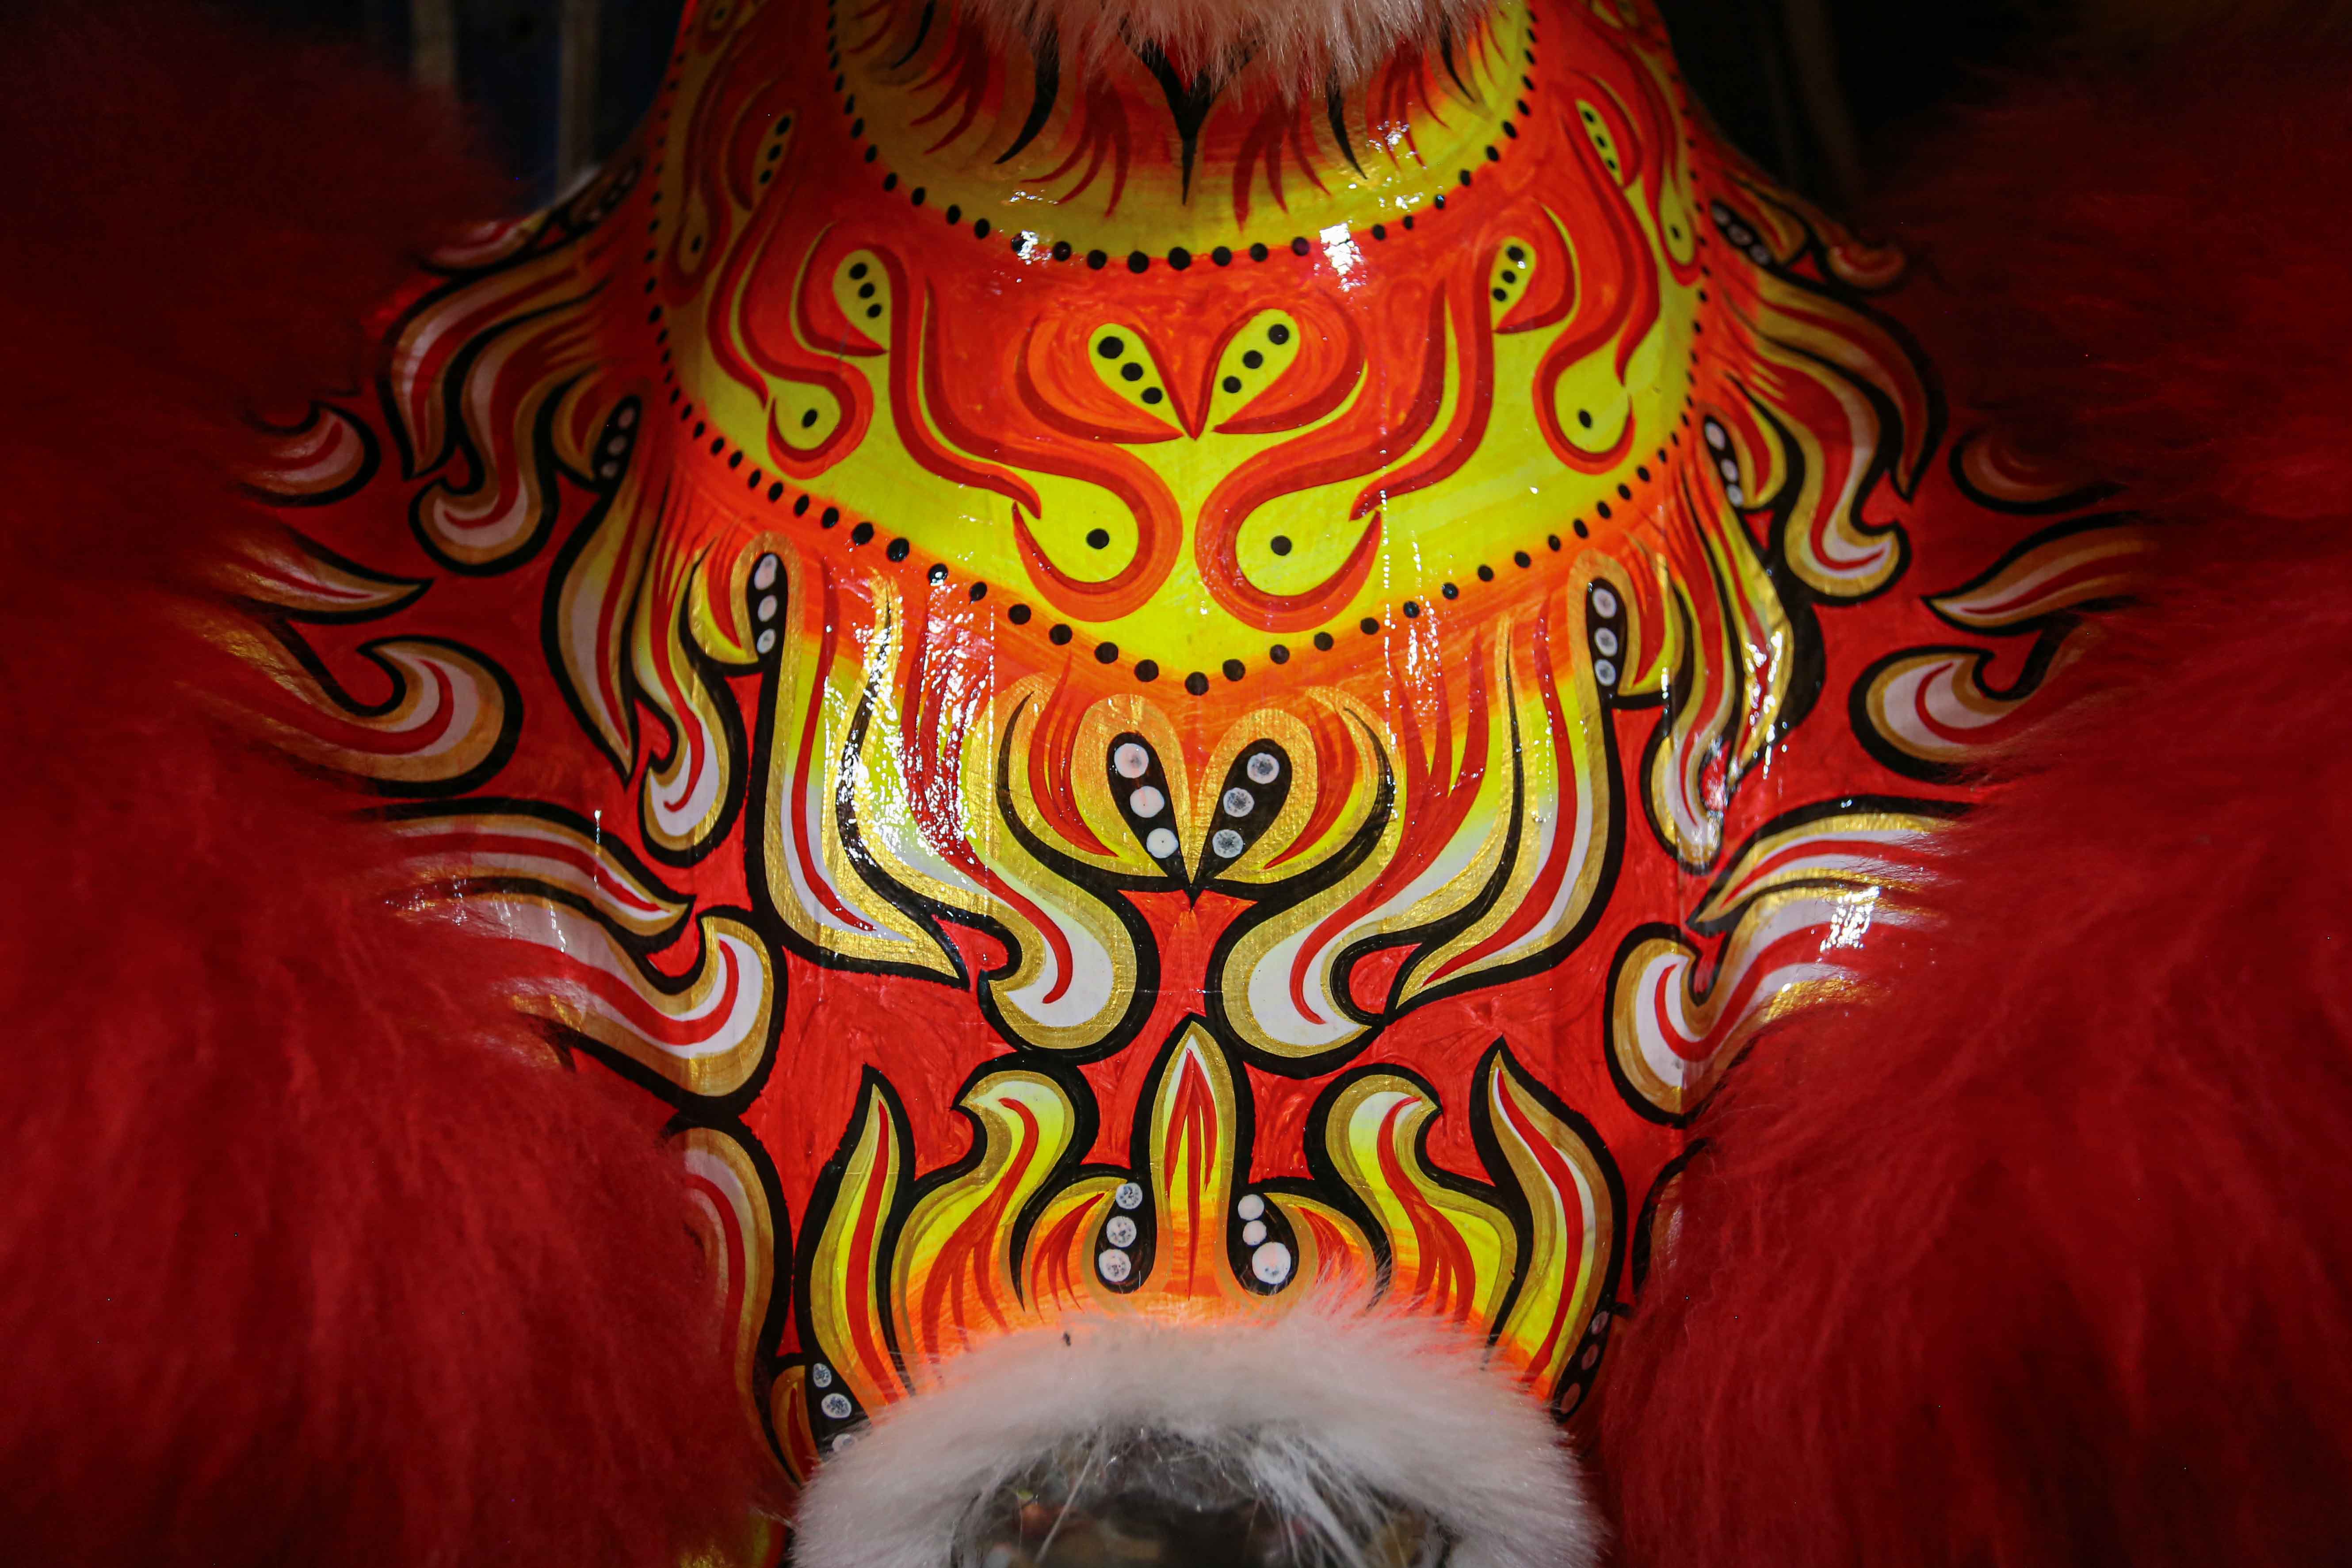 Lân sư rồng mùa Trung thu là một phong tục độc đáo của người Việt Nam. Khi mà mùa trăng tròn đến, các đội múa lân sư rồng sẽ xuất hiện với những bước nhảy uyển chuyển đầy màu sắc. Việc theo dõi những hình ảnh về lân sư rồng mùa Trung thu sẽ mang lại cho bạn những trải nghiệm thú vị về văn hóa truyền thống của dân tộc.